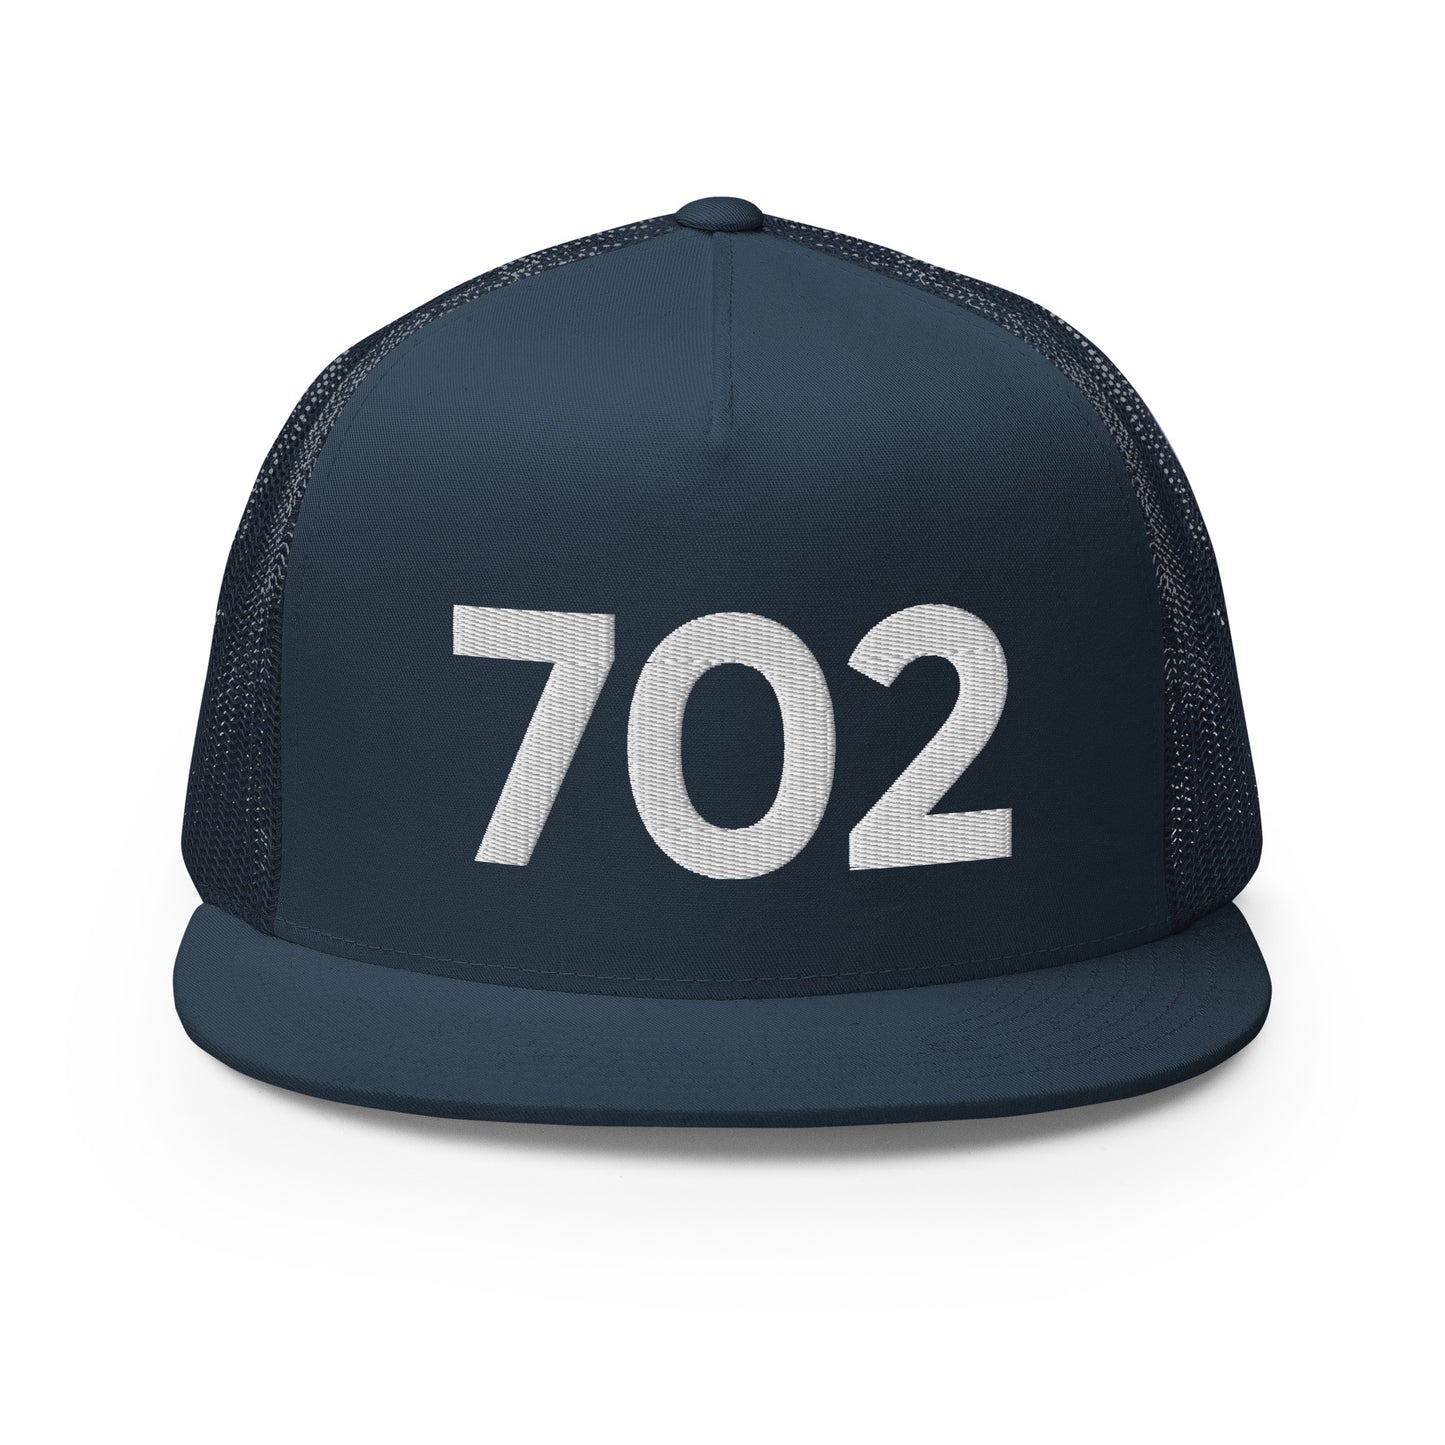 702 Las Vegas Trucker Hat